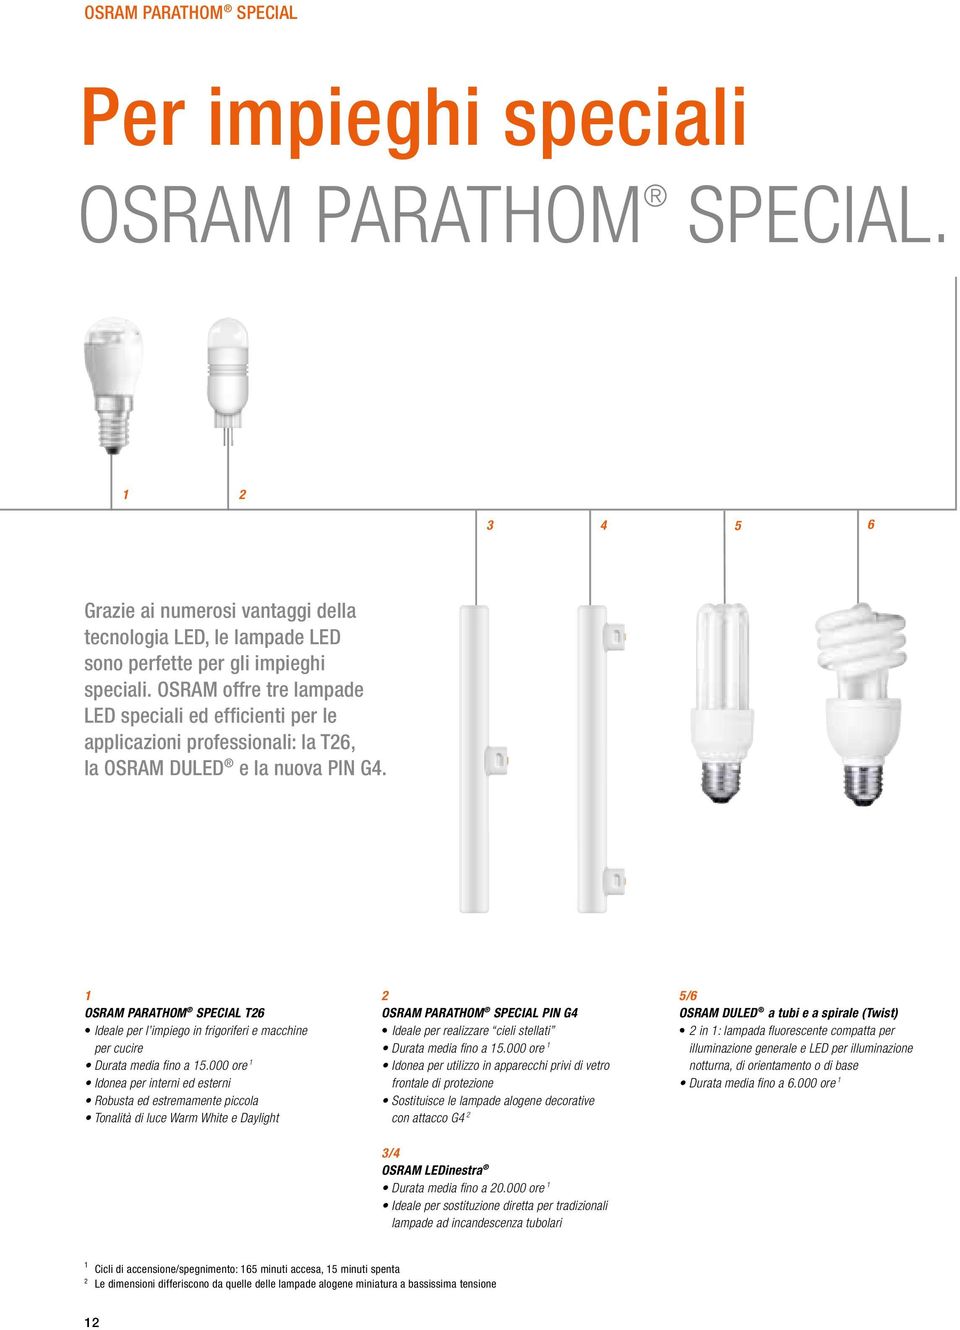 1 OSRAM PARATHOM SPECIAL T26 Ideale per l impiego in frigoriferi e macchine per cucire Durata media fino a 15.